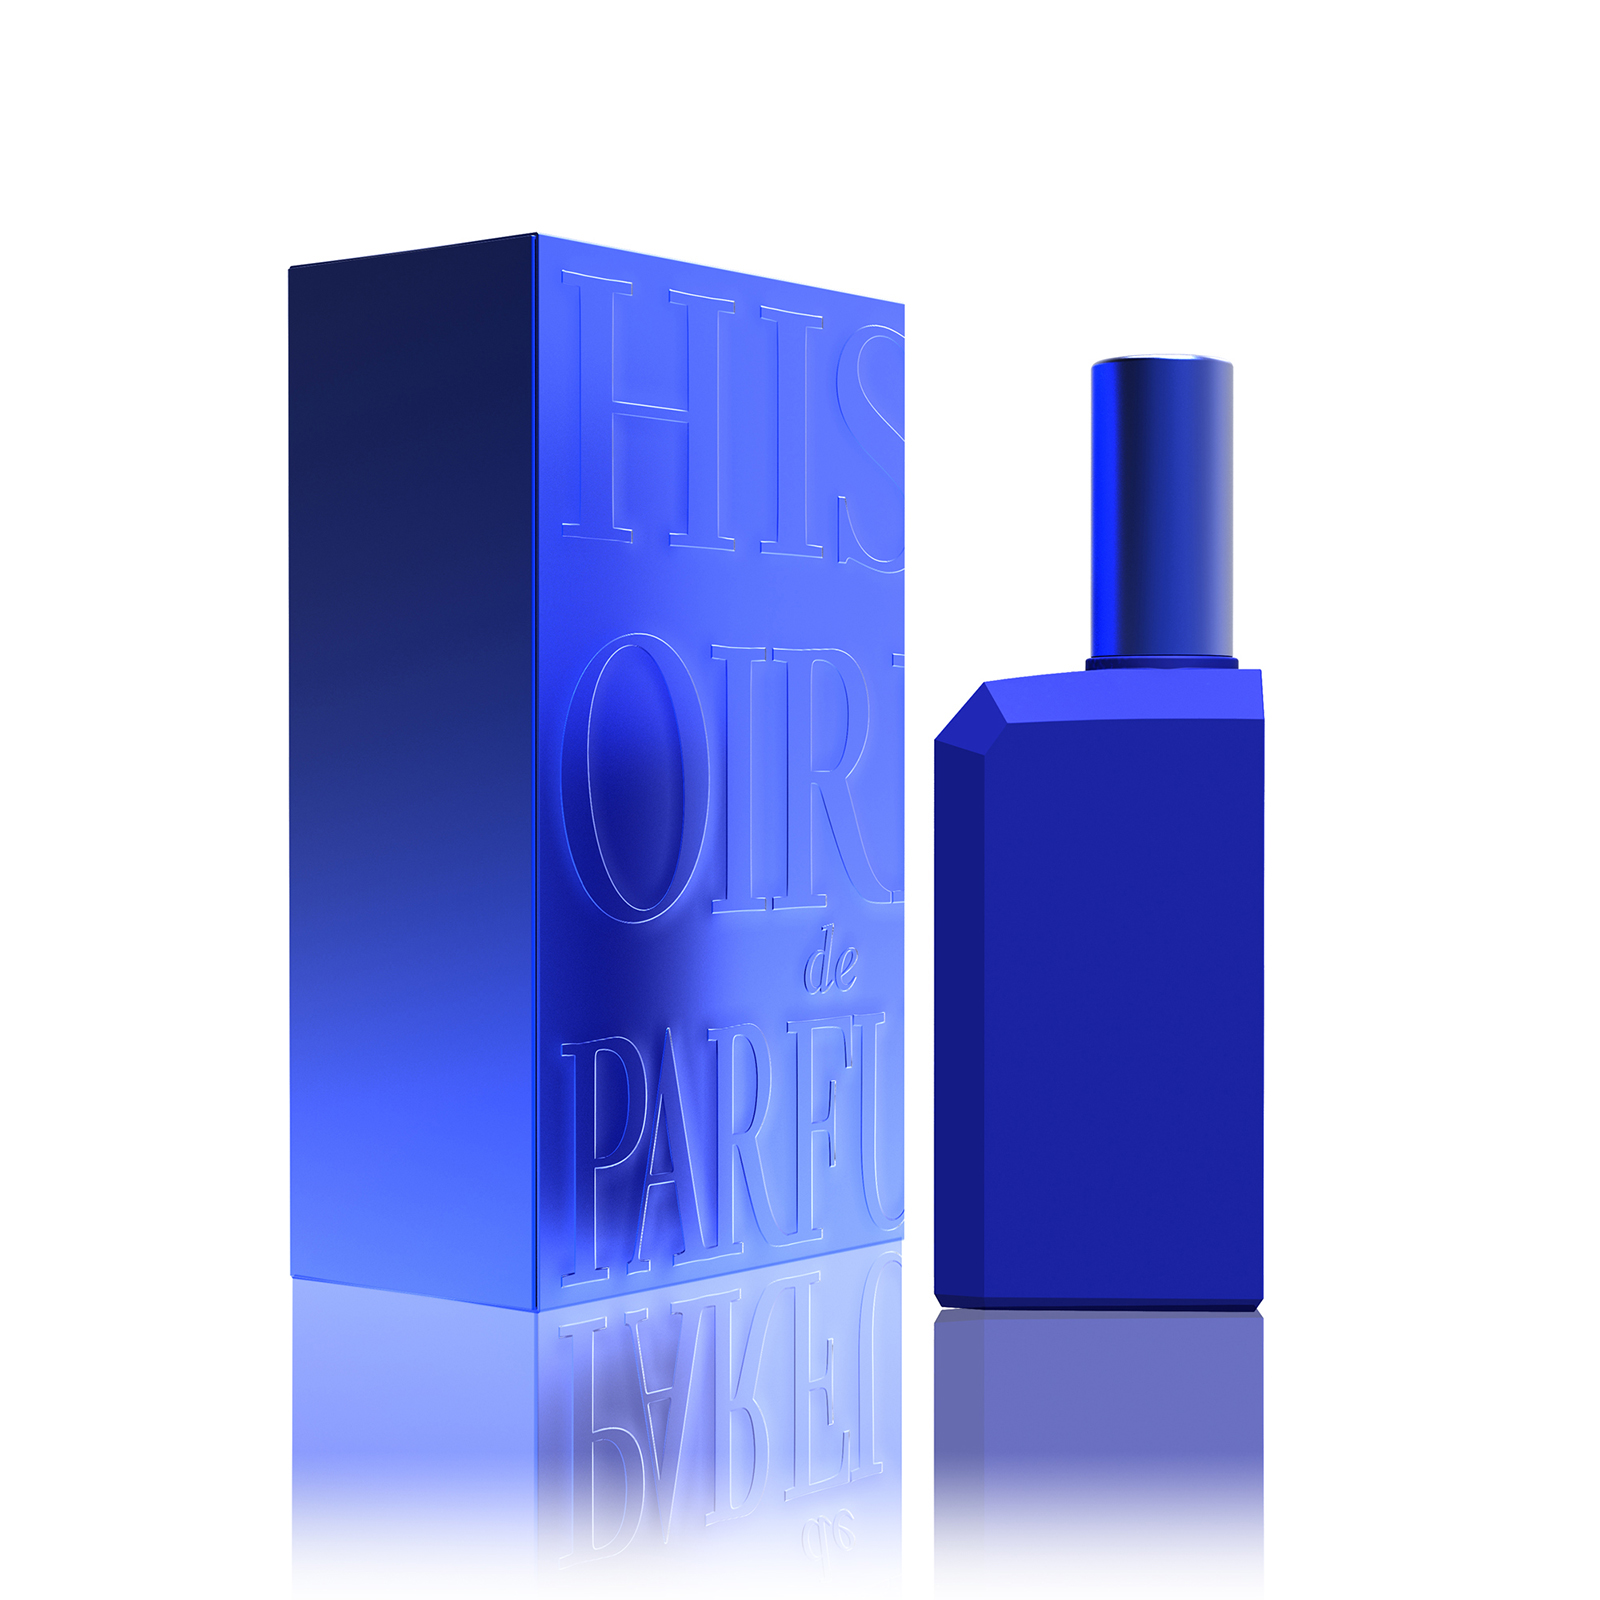 Купить Histoires de Parfums This is not a Blue Bottle 1.1 60 ml.